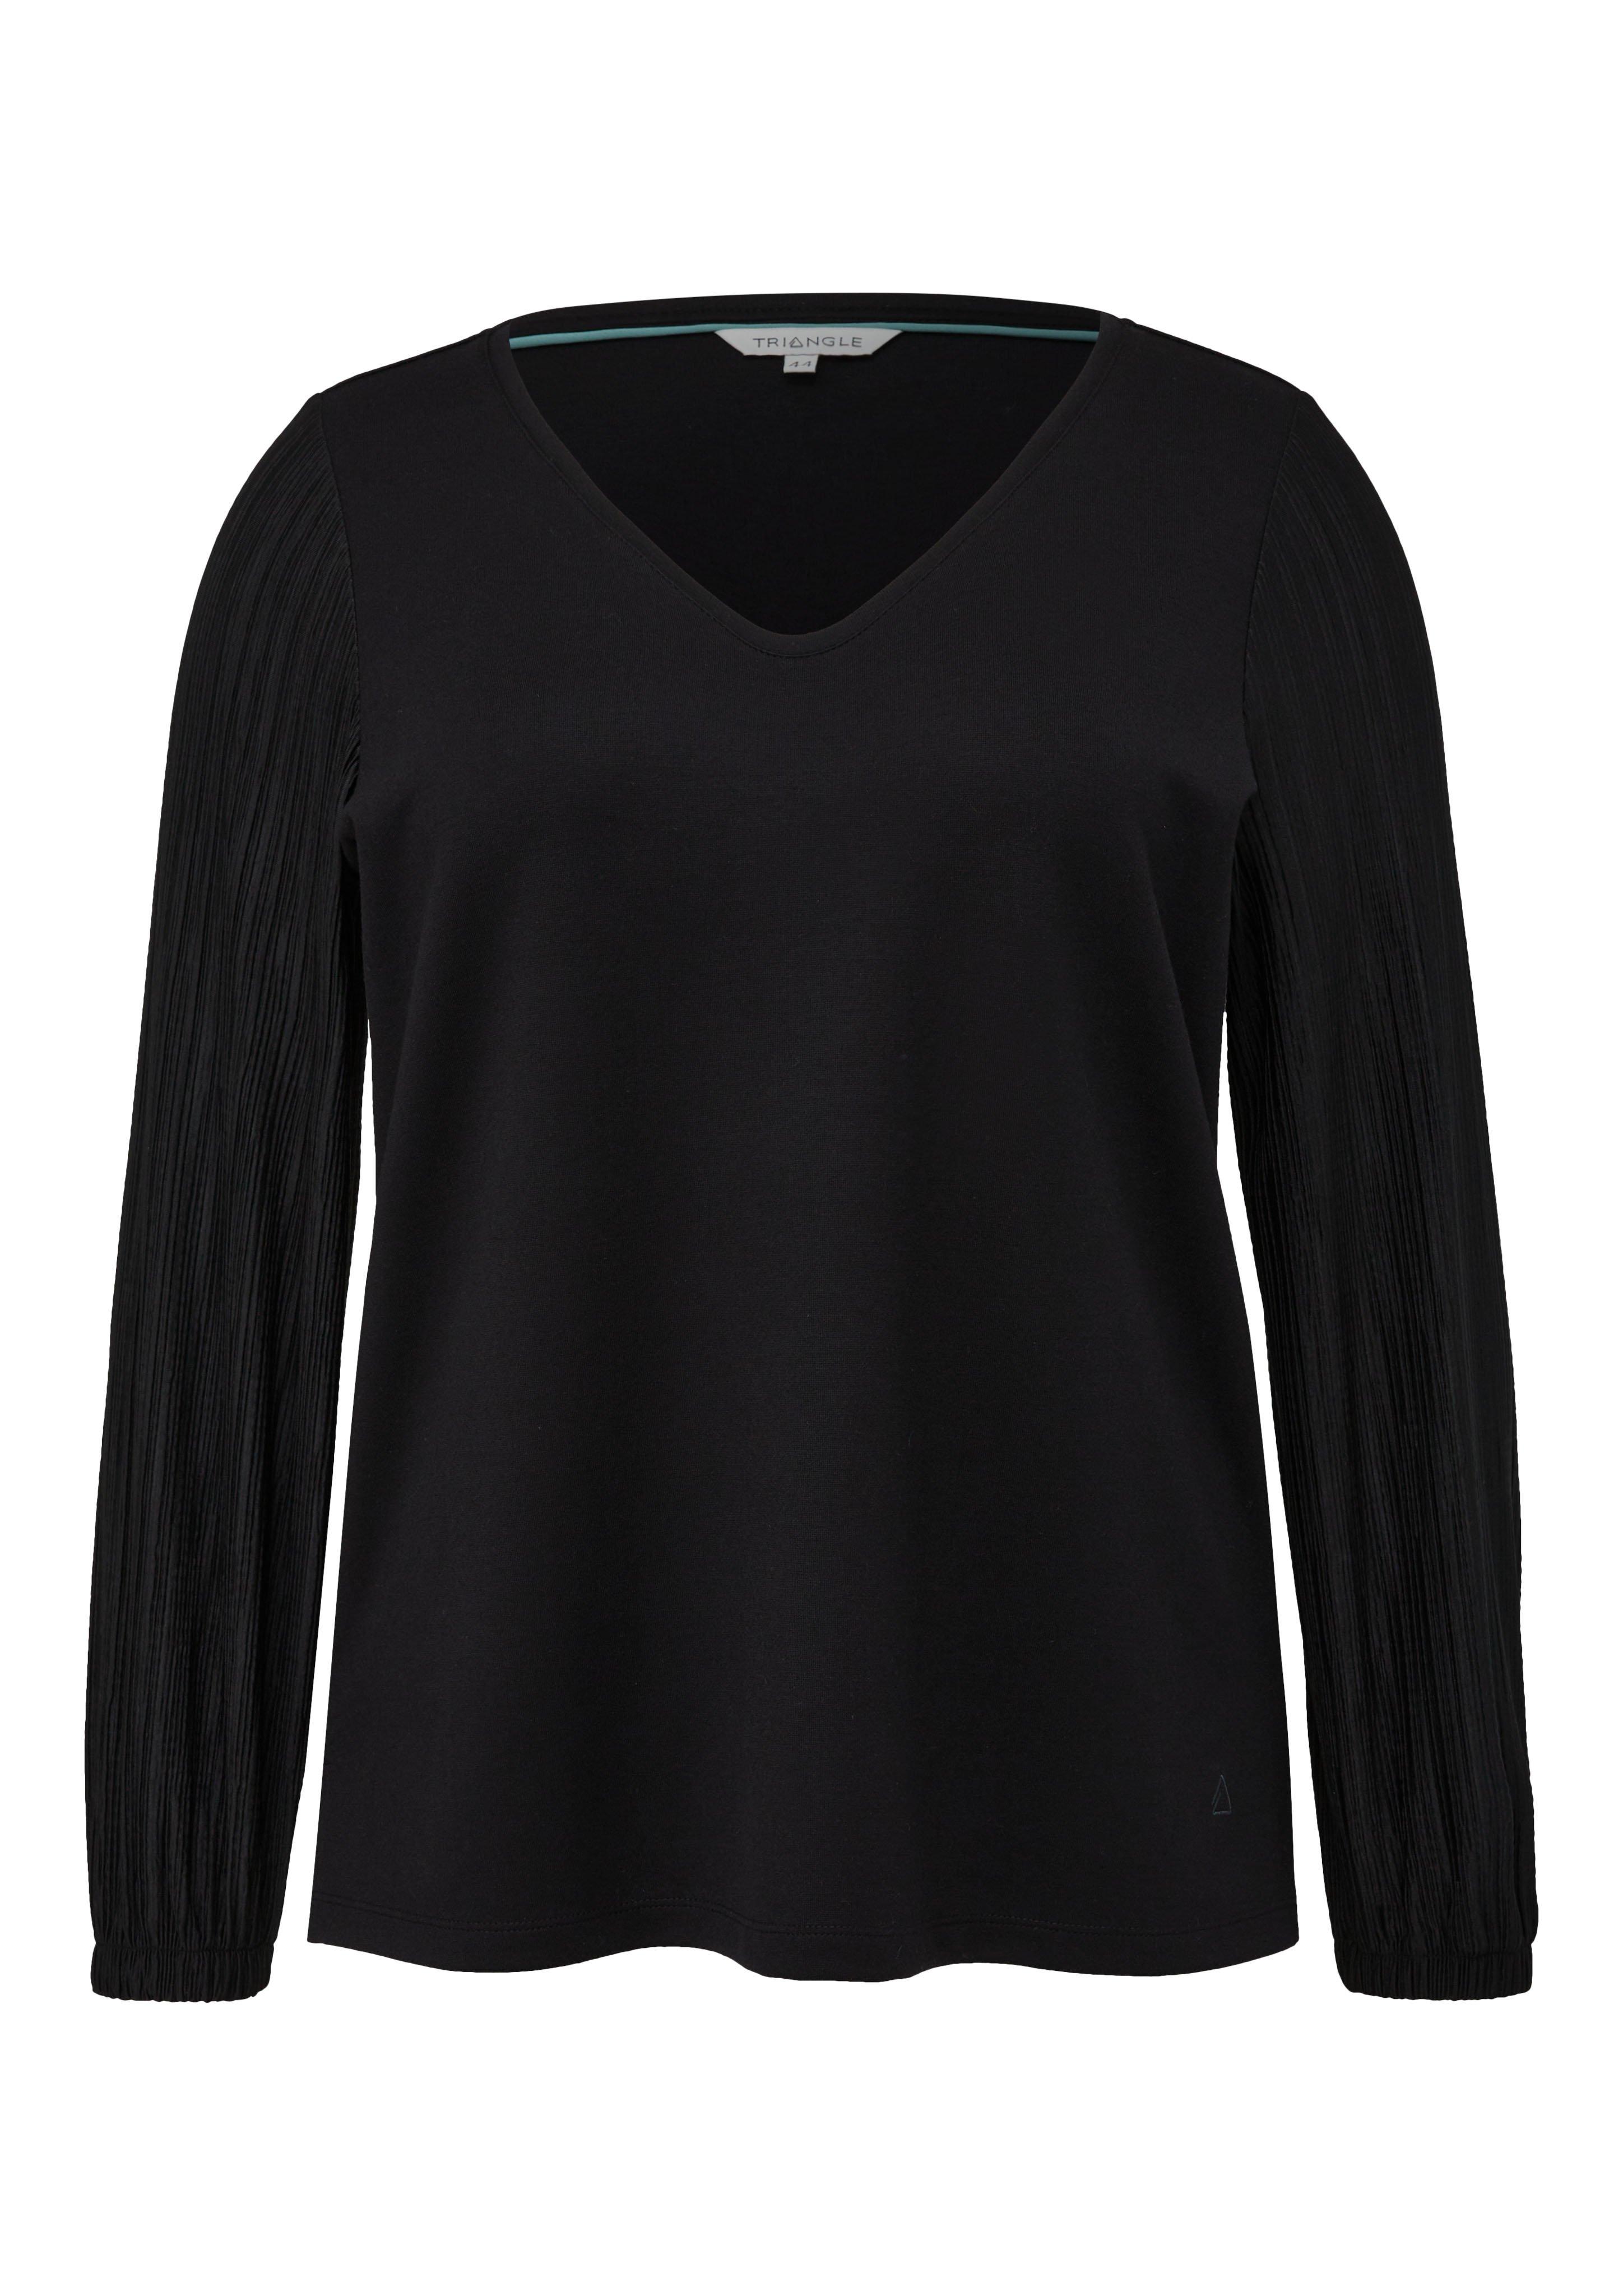 Große Größen: Jerseyshirt mit V-Ausschnitt und plissierten Ärmeln, schwarz, Gr.44-54 product